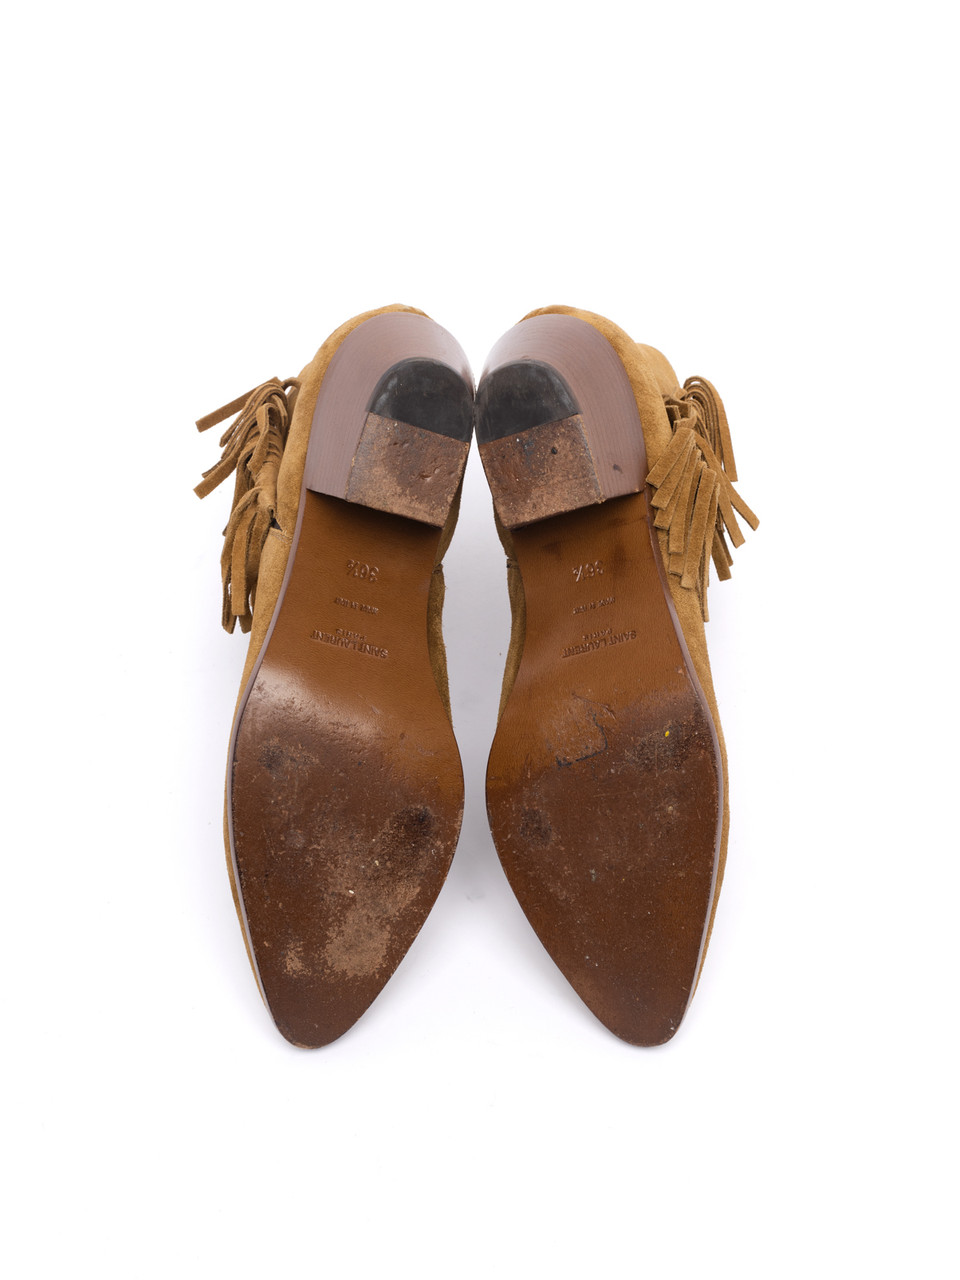 Saint Laurent, Suede Fringe Ankle Boots